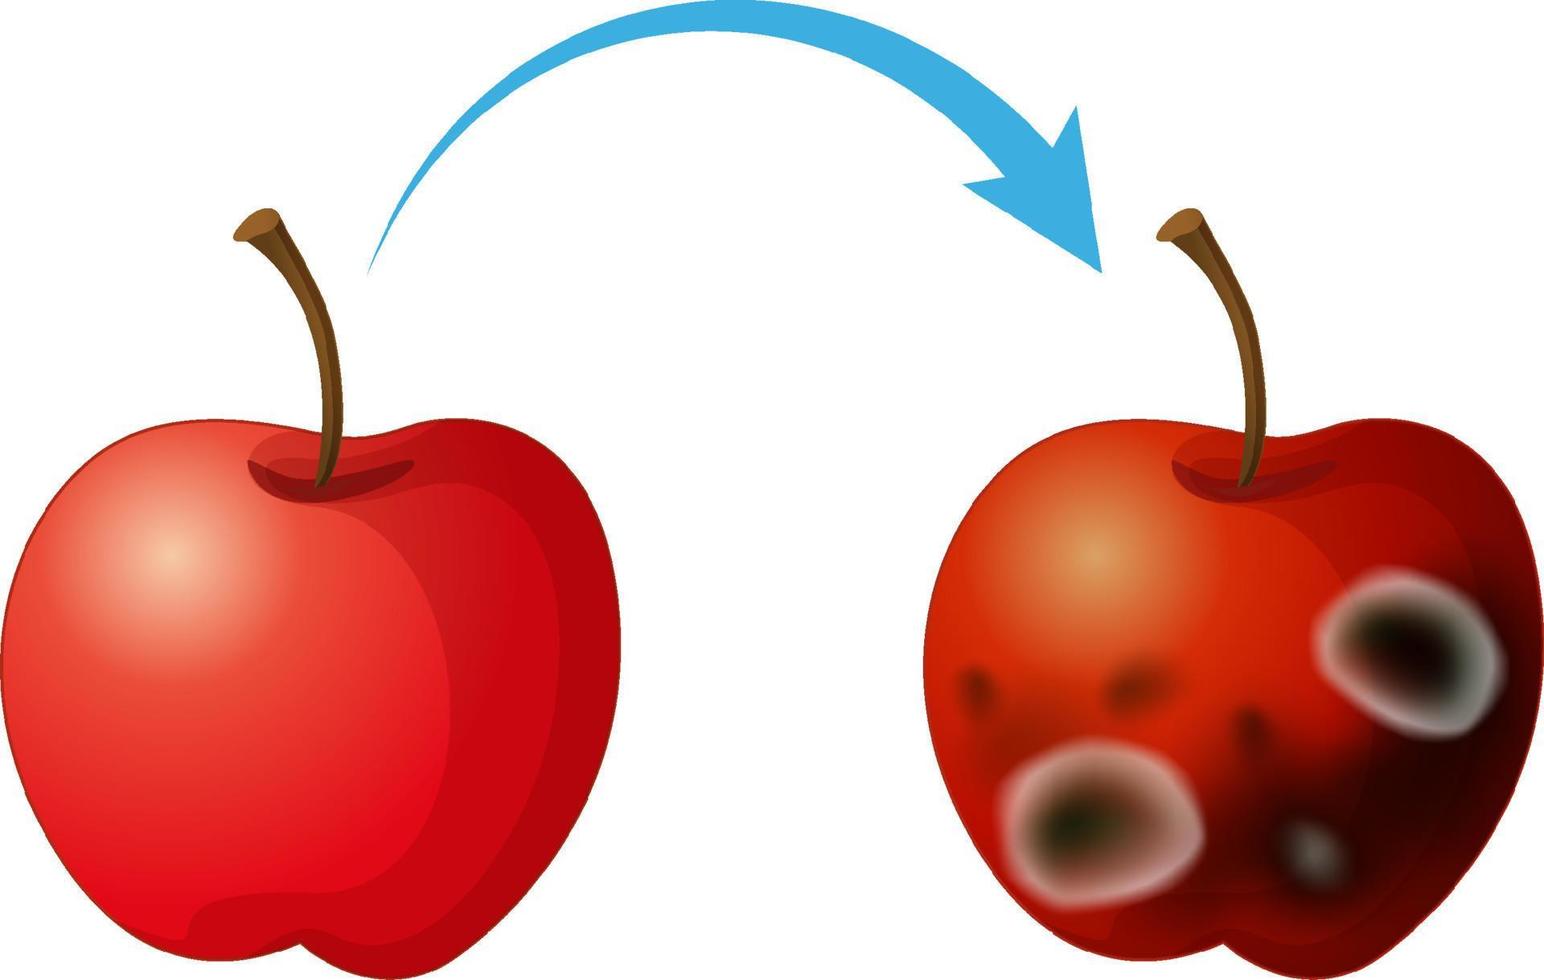 maçã decomposta não comestível com mofo vetor